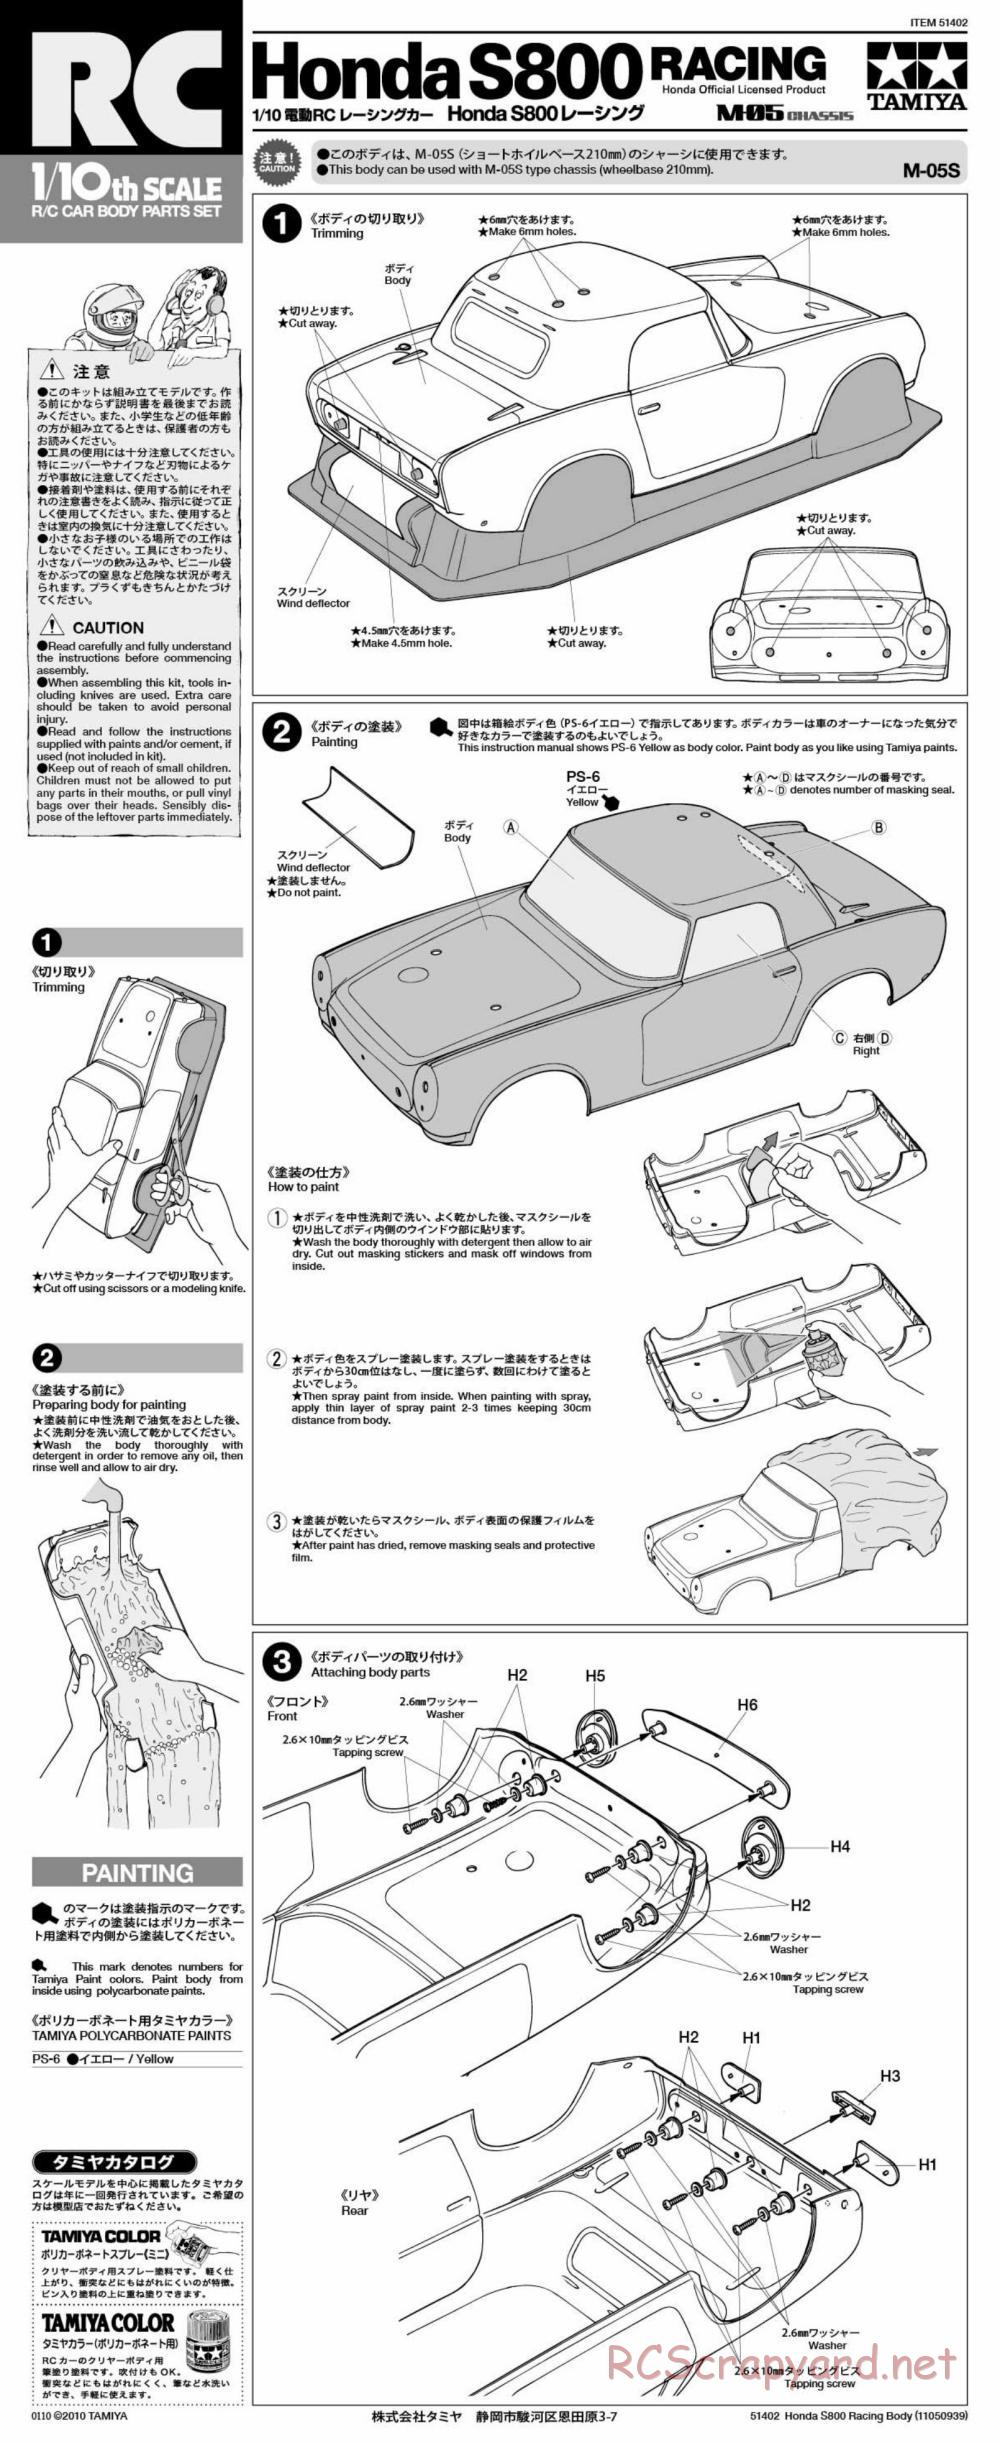 Tamiya - Honda S800 Racing - M-05 Chassis - Body Manual - Page 1